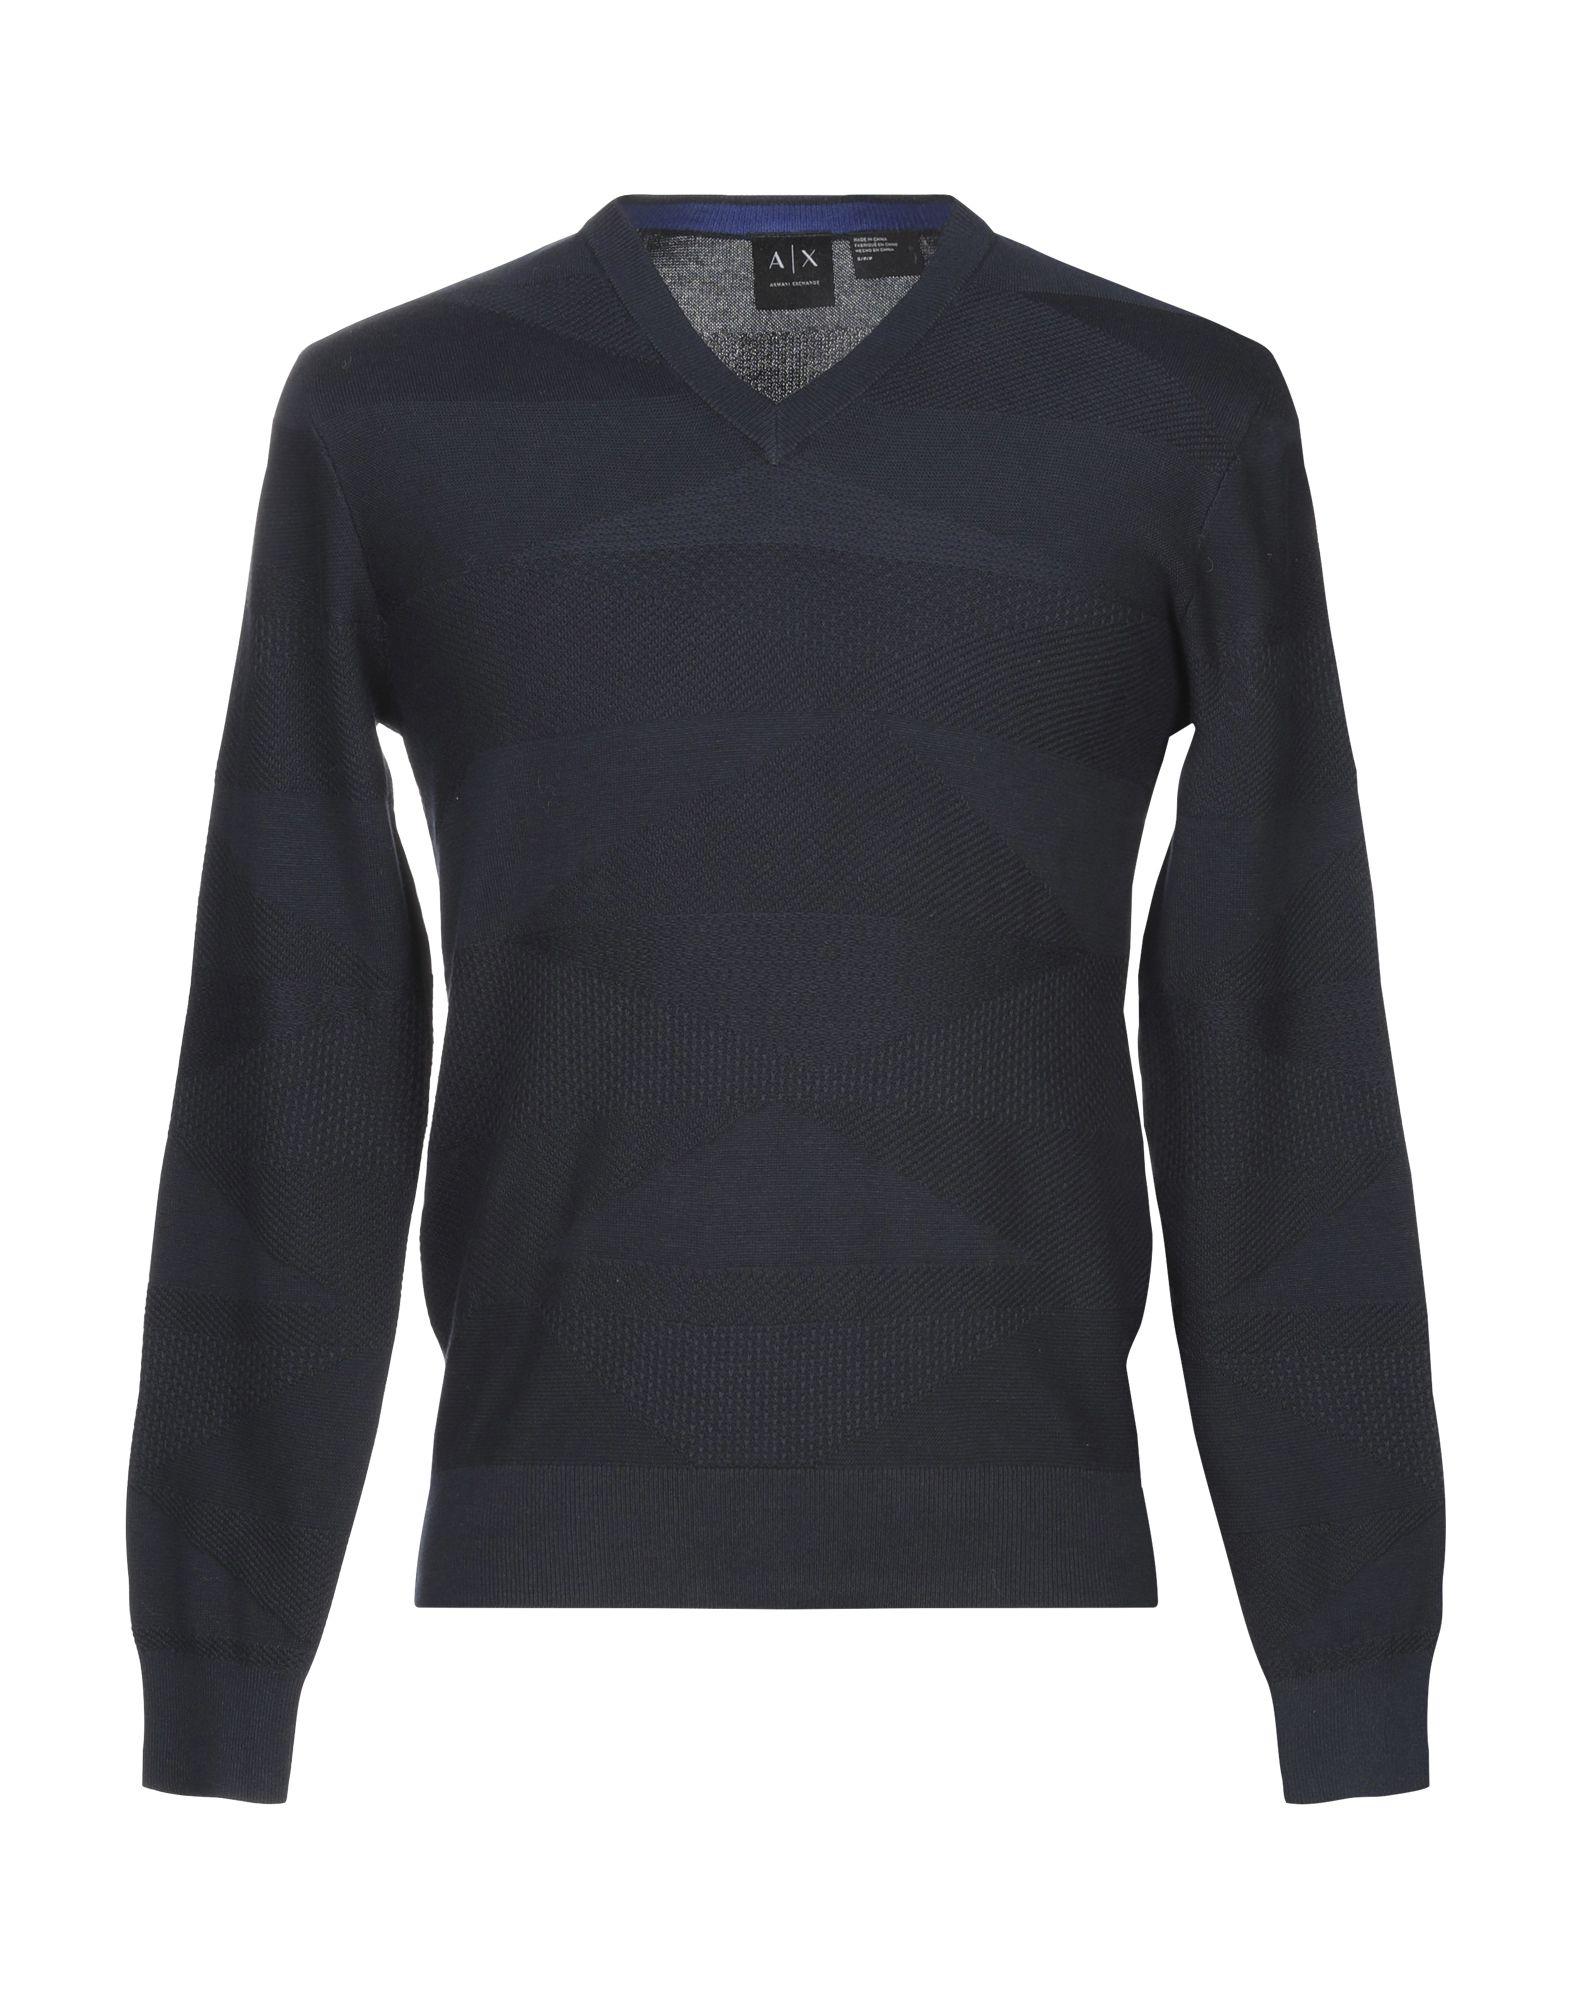 Armani Exchange Cotton Sweater in Dark Blue (Blue) for Men - Lyst